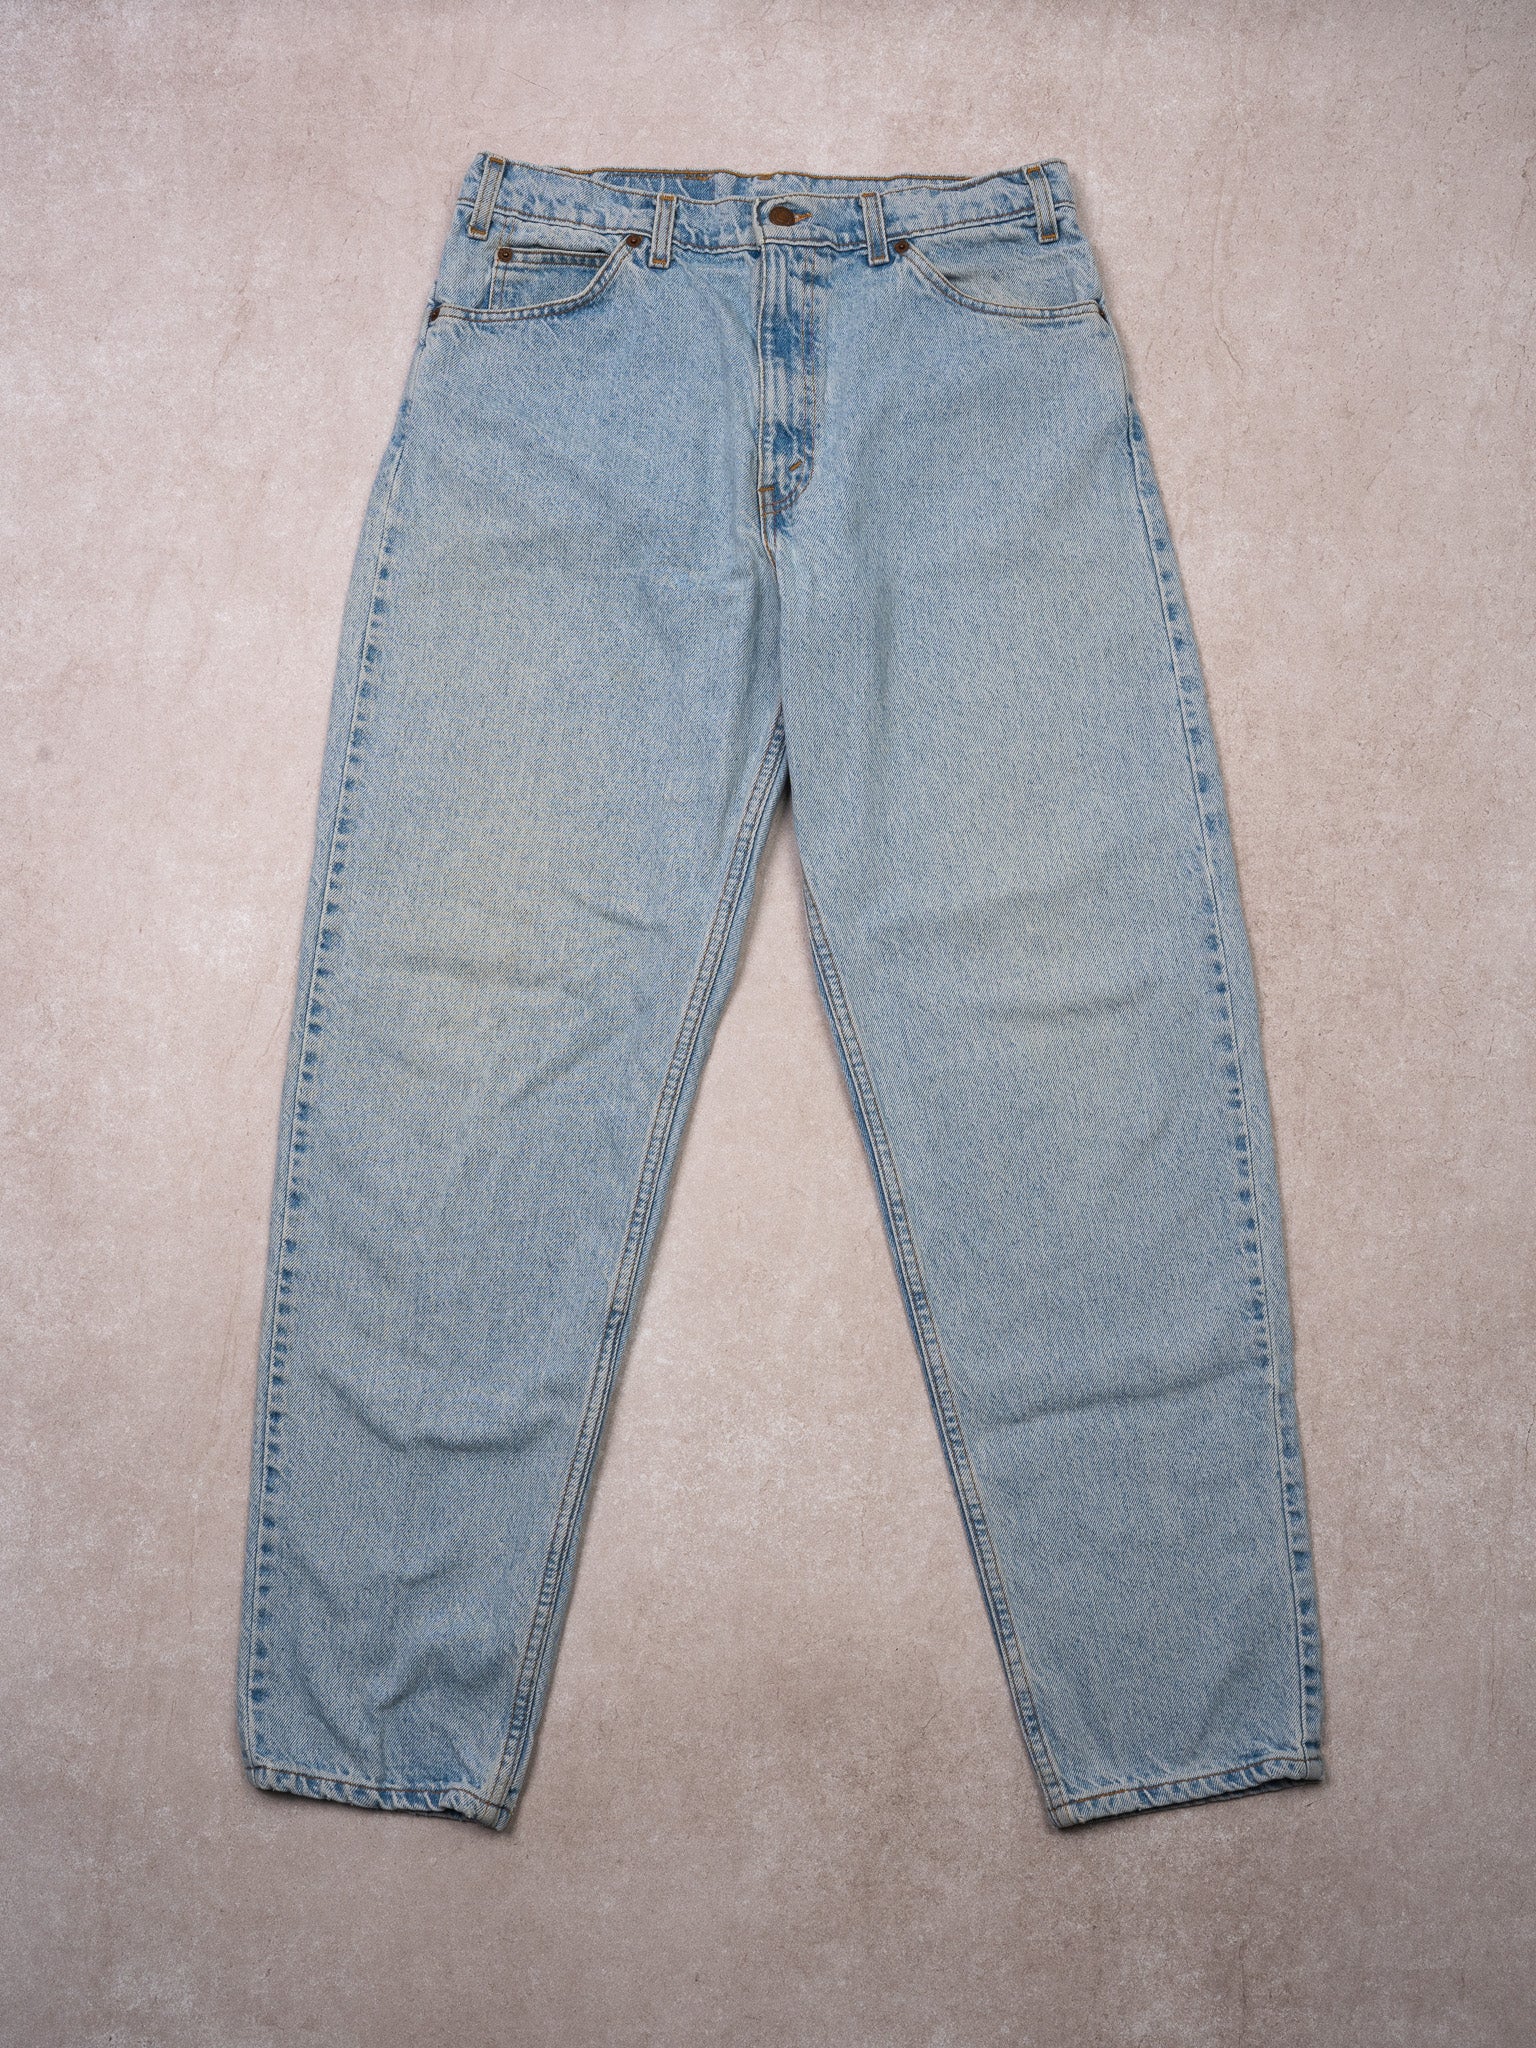 Vintage 1970s Light Blue Levi 550 Relax Fit Jeans (30 x 32)